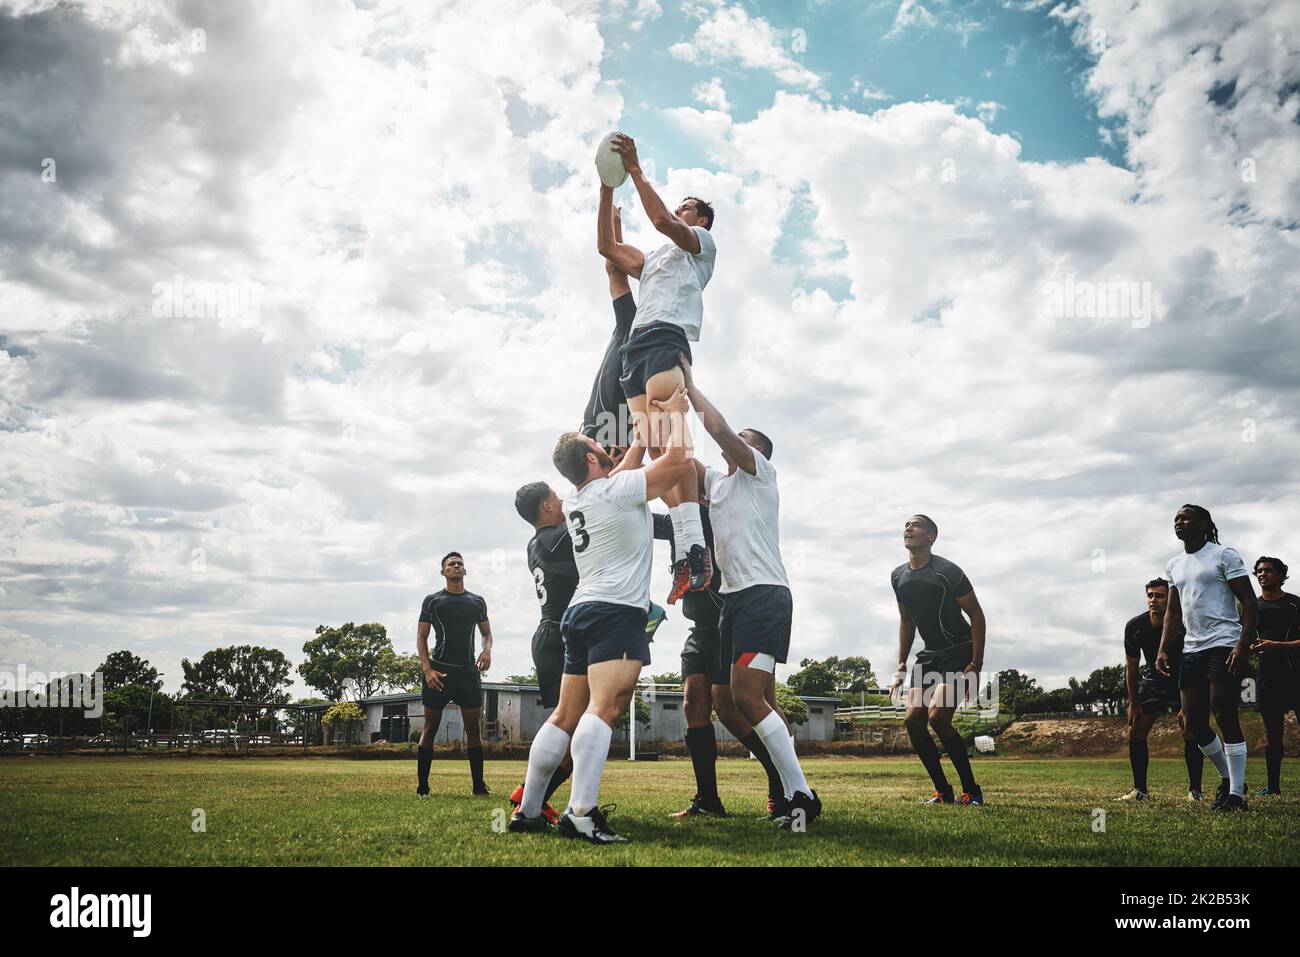 Greifen Sie nach dem Himmel. Aufnahme von zwei Rugby-Teams, die während einer Linie aus einem Rugby-Spiel draußen auf einem Filed um einen Ball kämpfen. Stockfoto